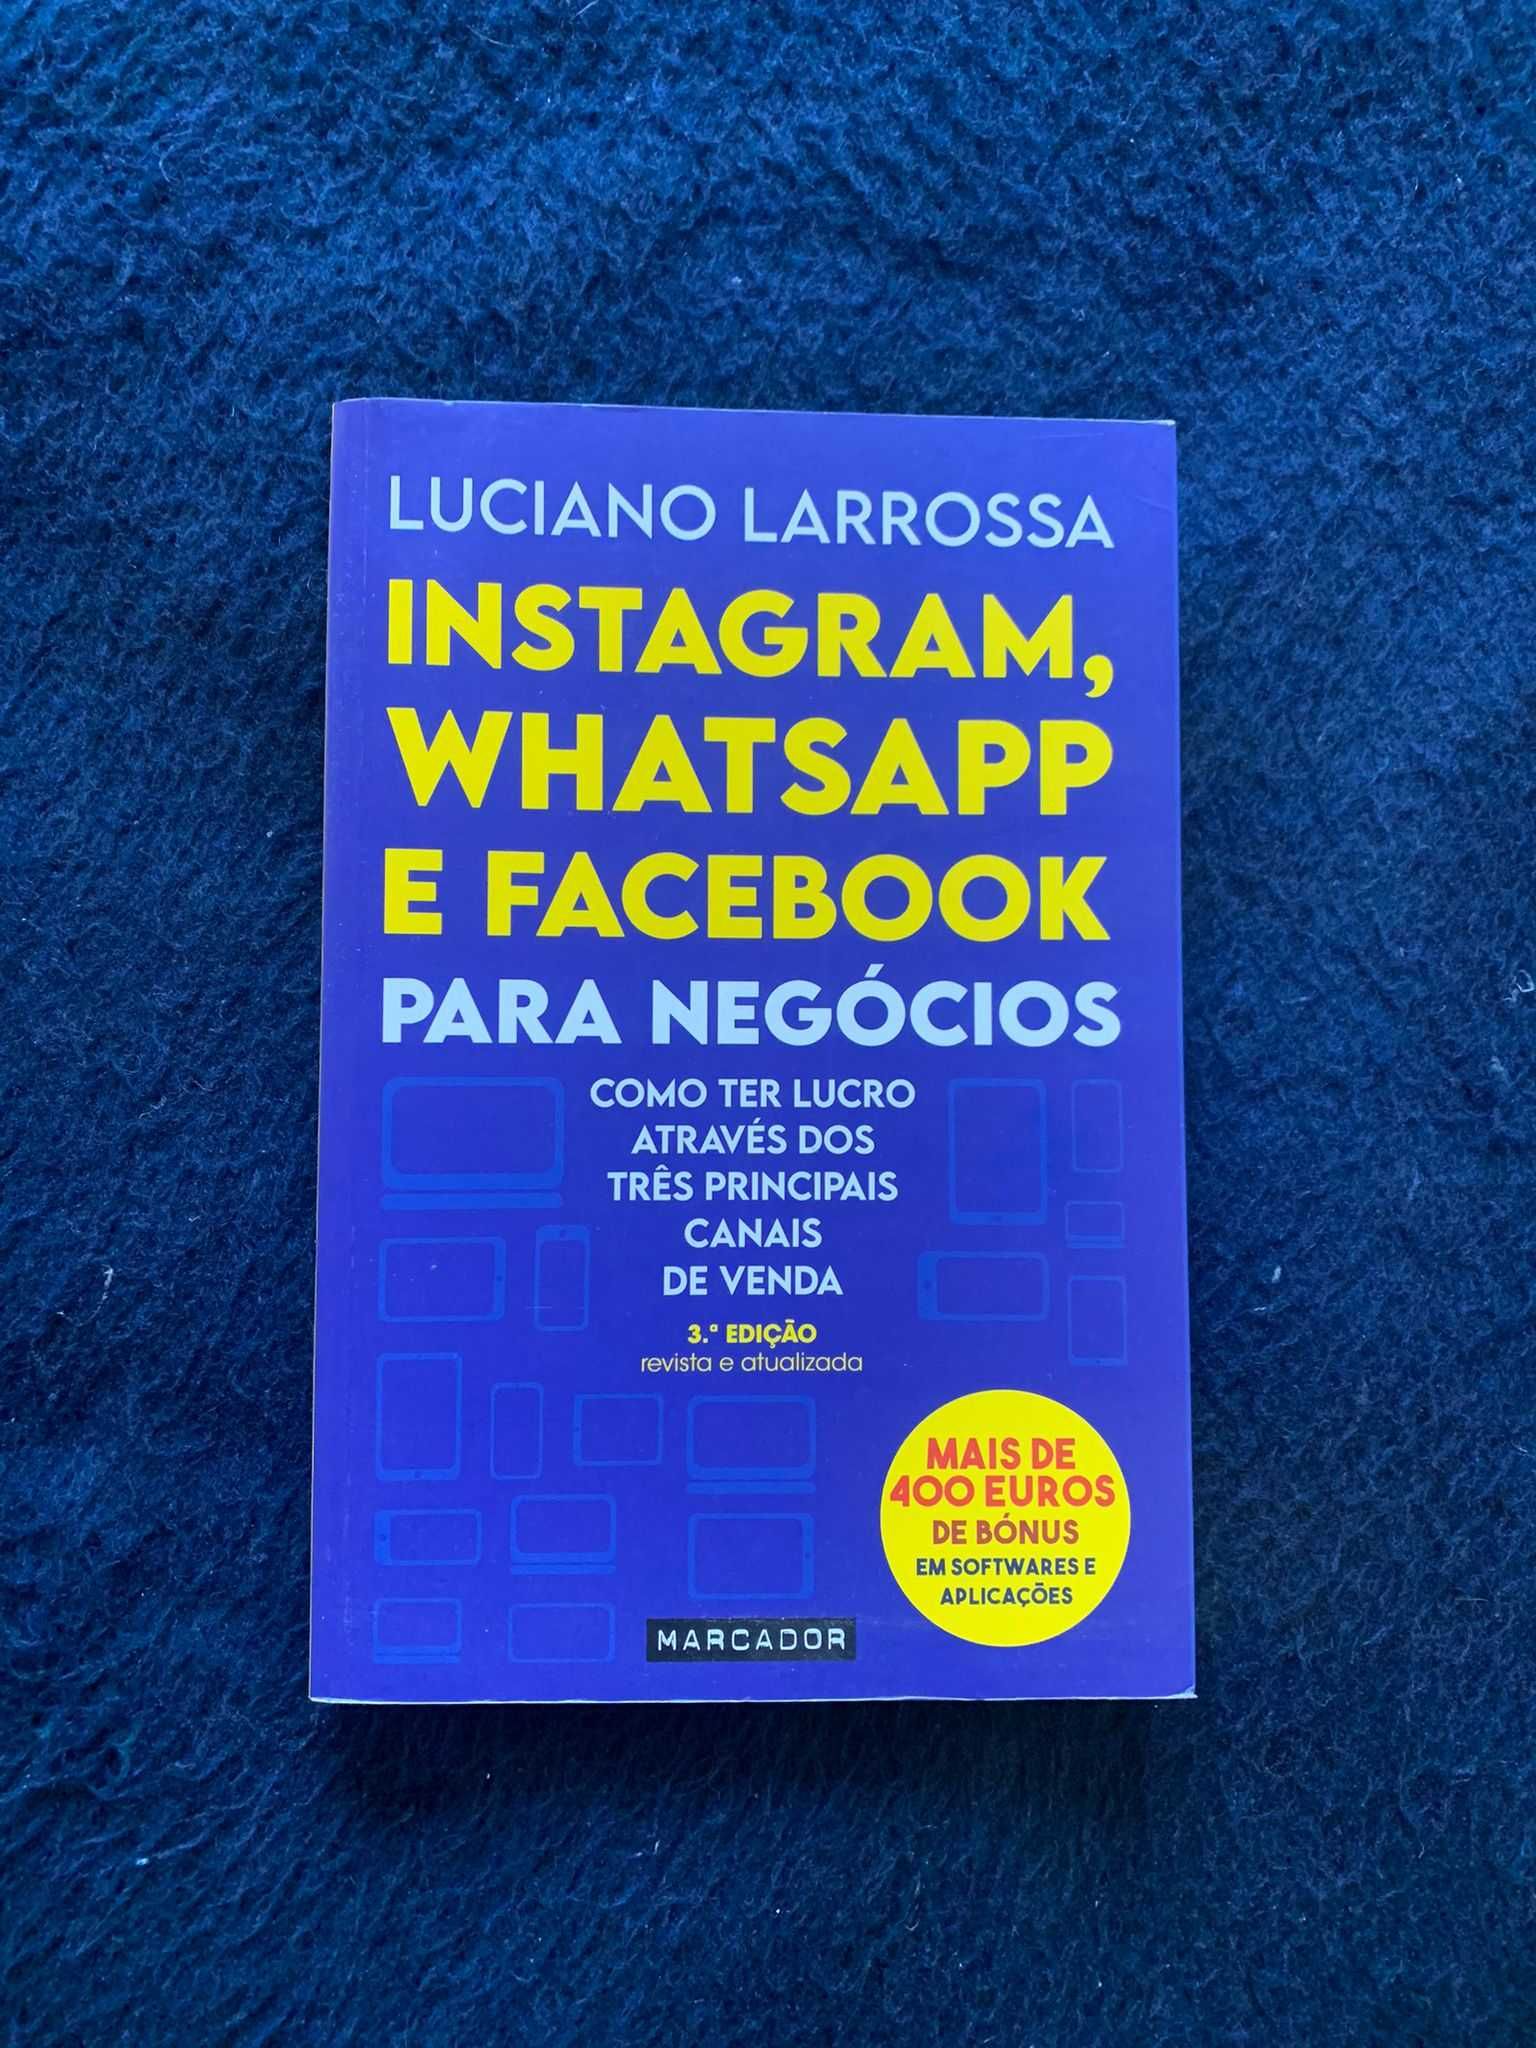 Livro "Instragam, WhatsApp e Facebook para Negócios"- Luciano Larrosa